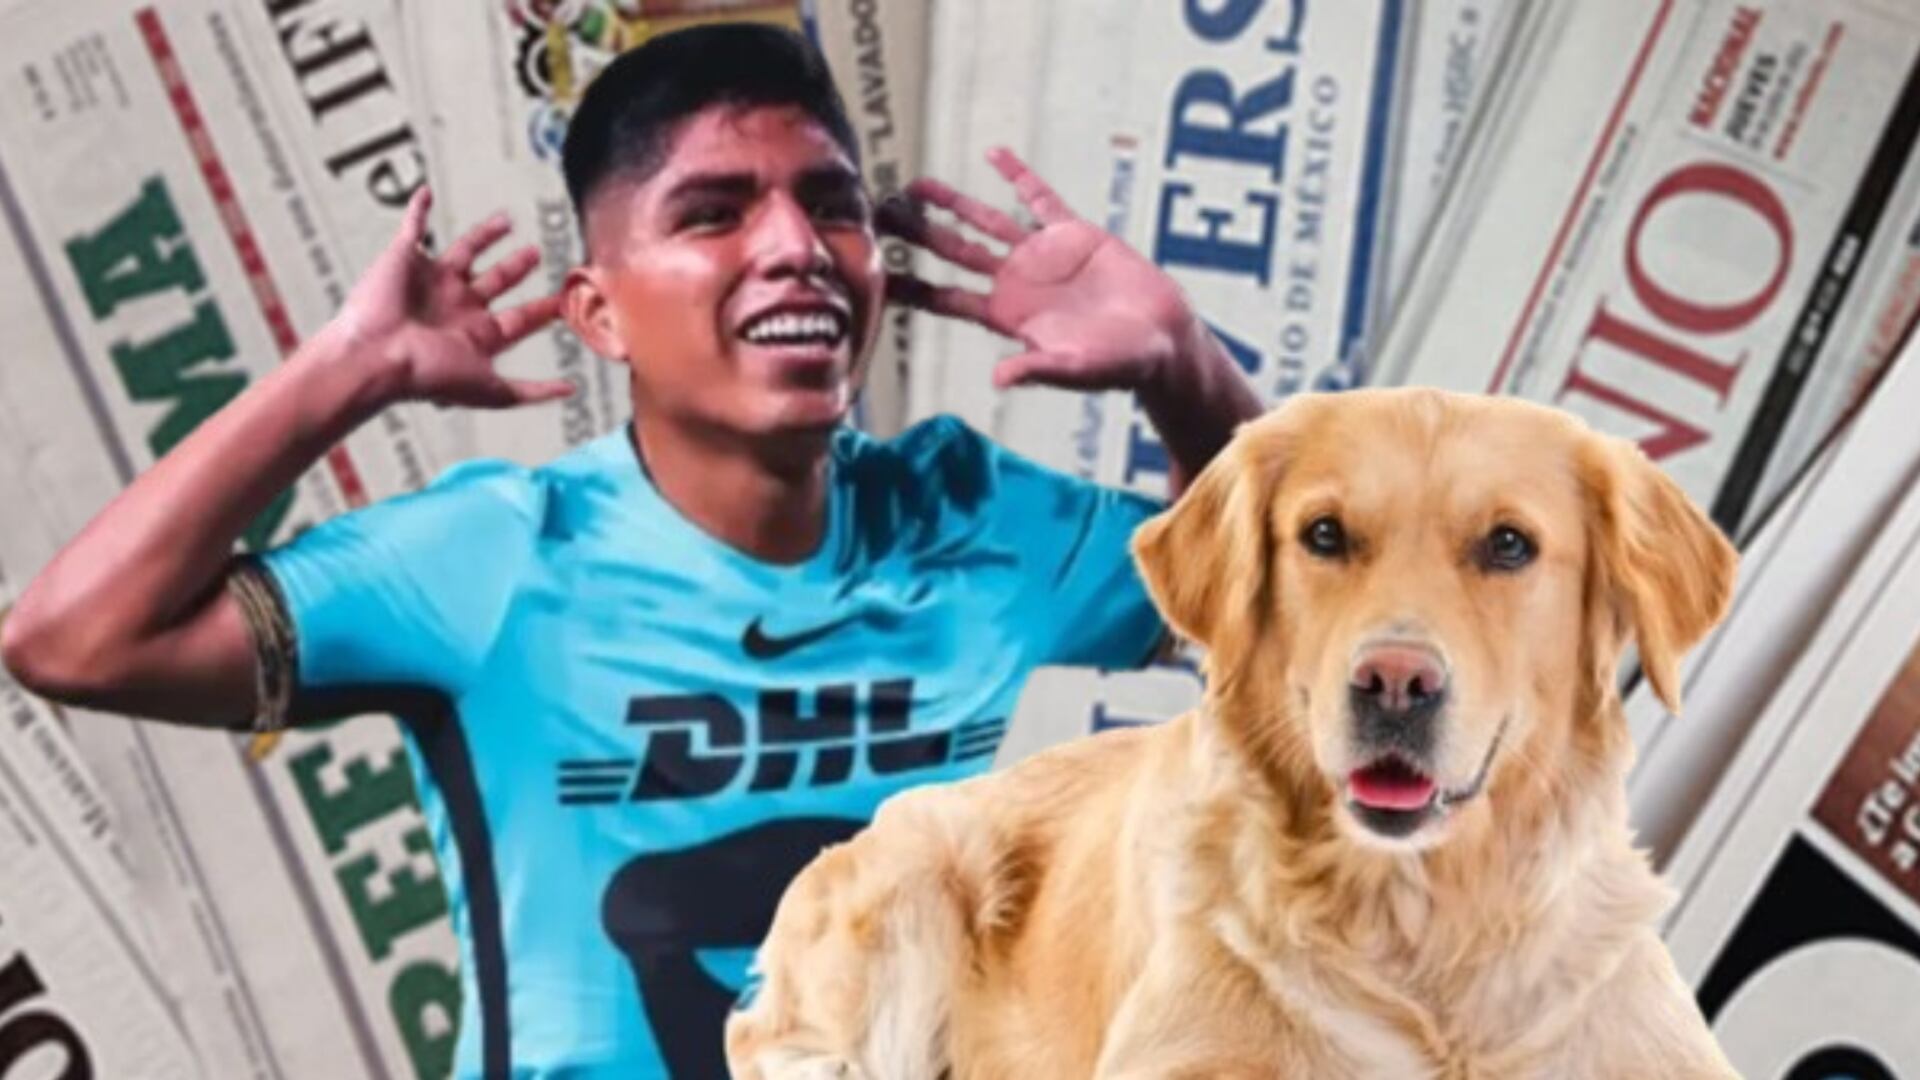 Lo que hizo prensa mexicana, al enterarse historia de Piero Quishpe y su perro